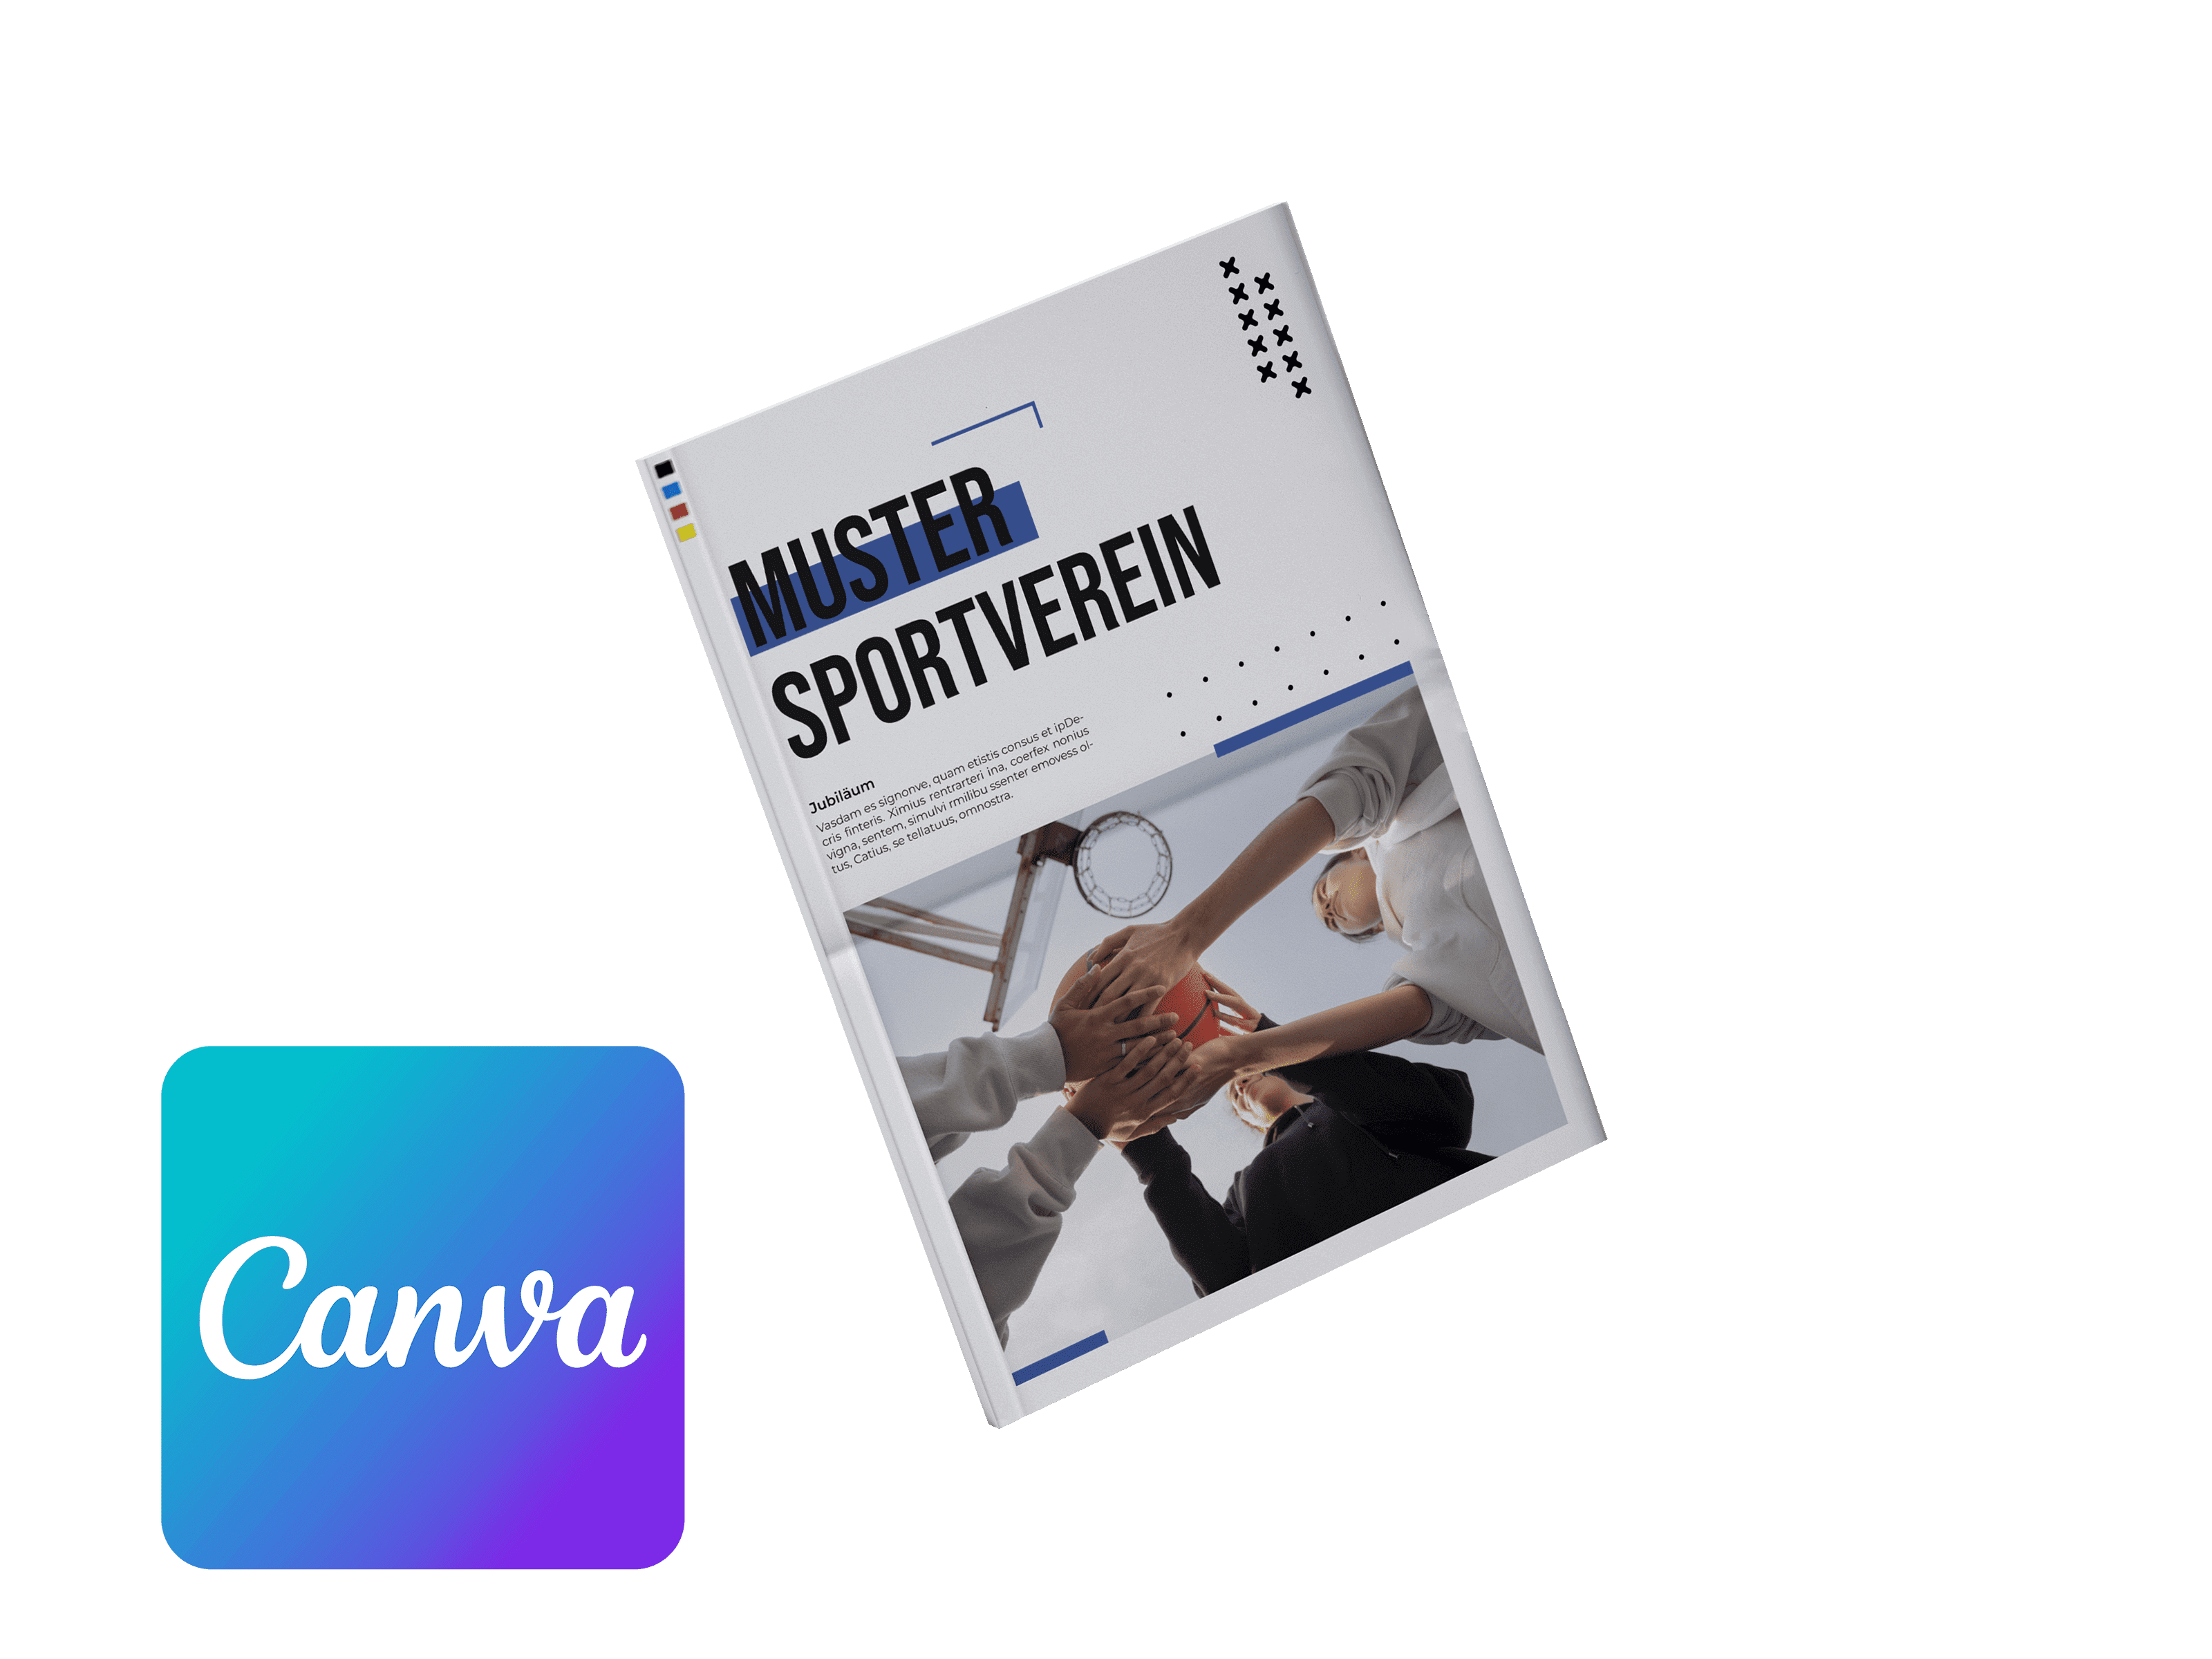 Vereinszeitung für Sportverein online mit Canva gestalten